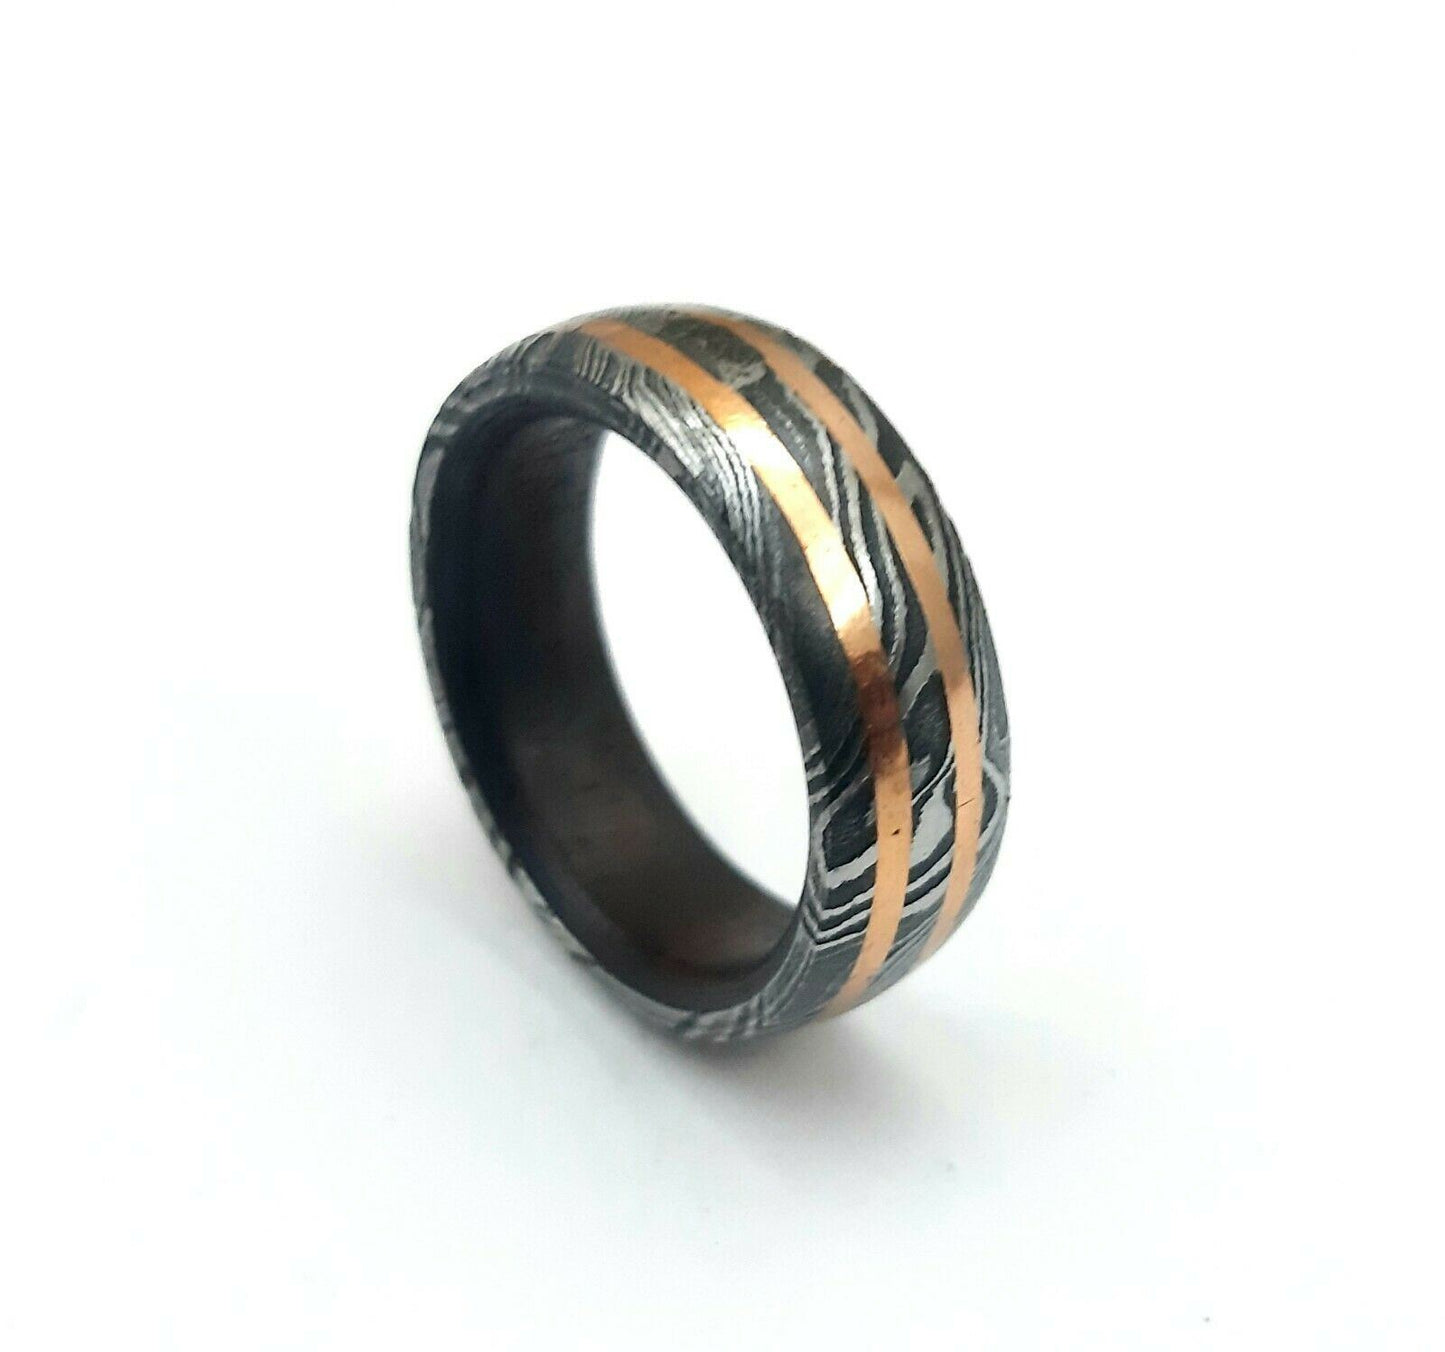 Handmade Damascus Steel Wedding Band Ring For Men-Engagement Band Ring for Men